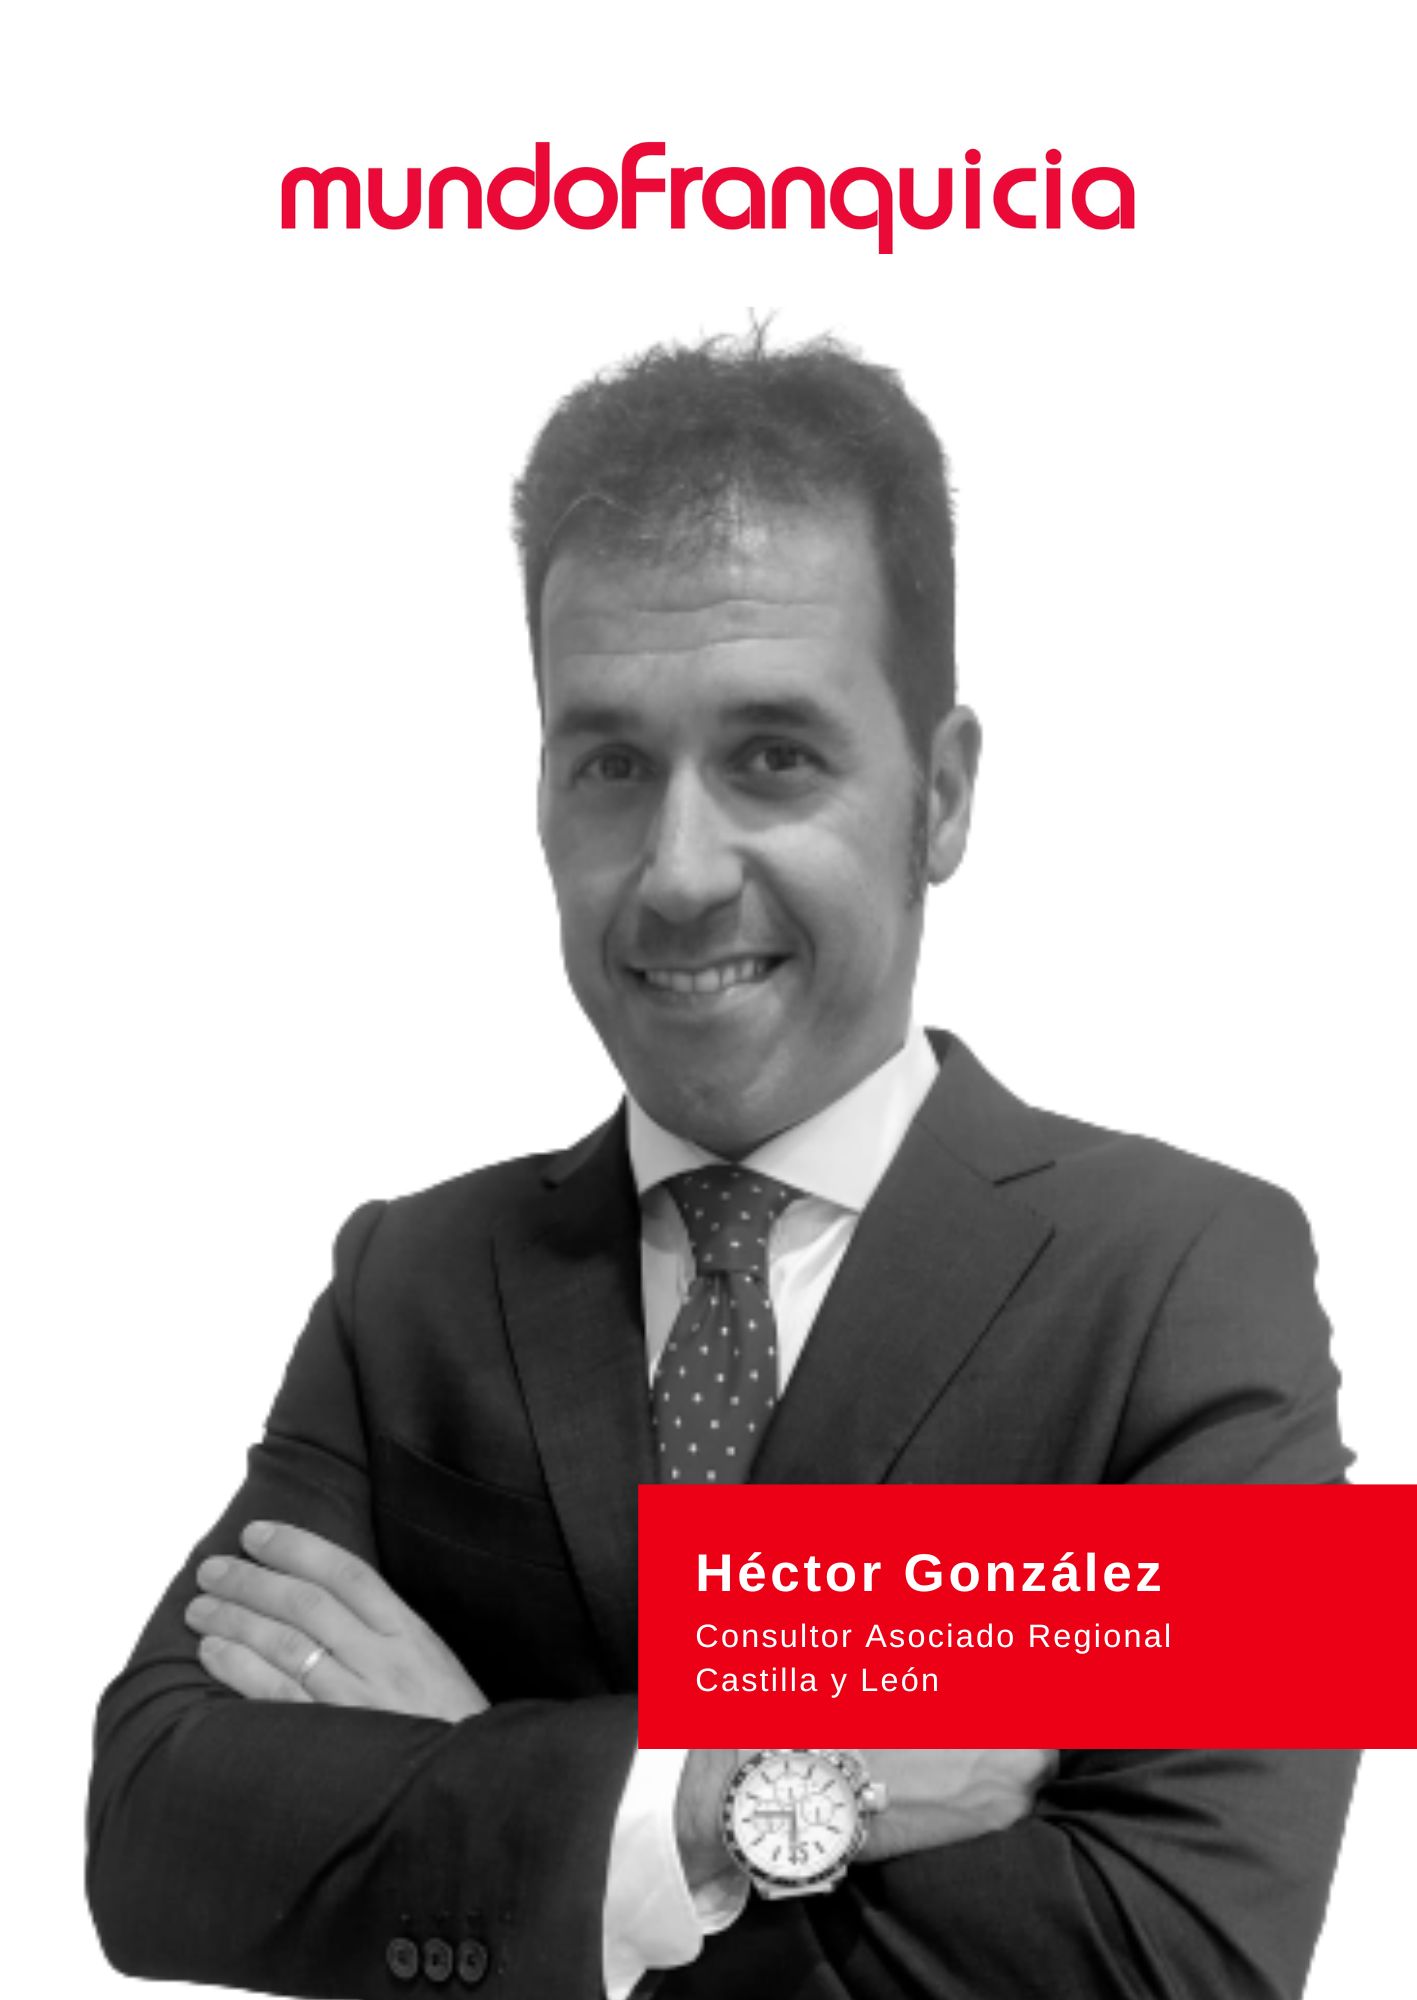 Héctor González